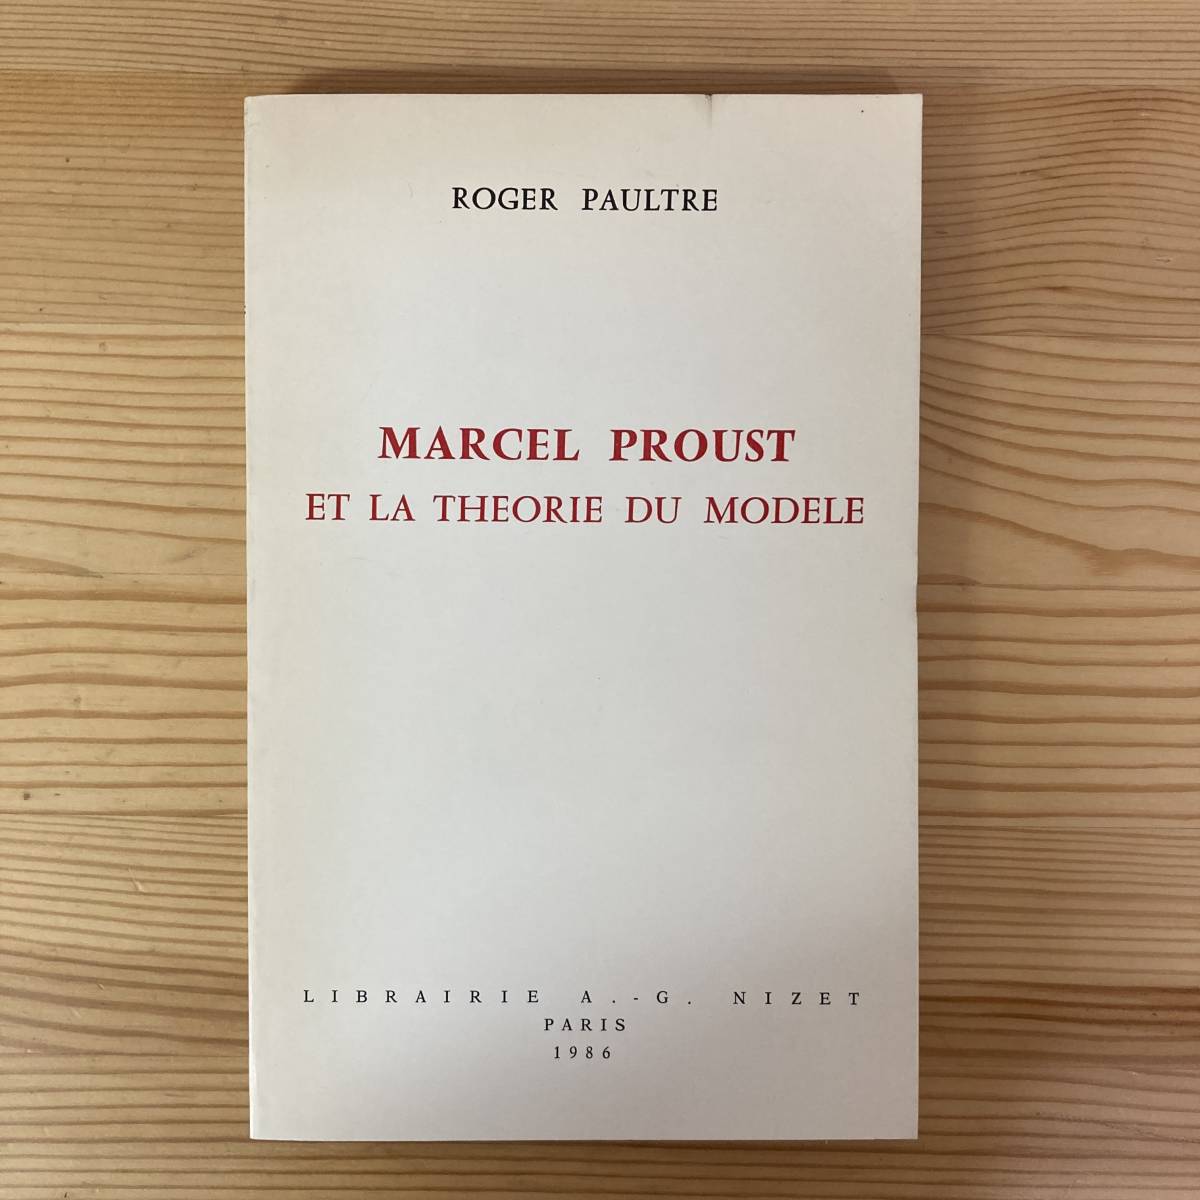 【仏語洋書】MARCEL PROUST ET LA THEORIE DU MODELE / Roger Paultre（著）【マルセル・プルースト】_画像1